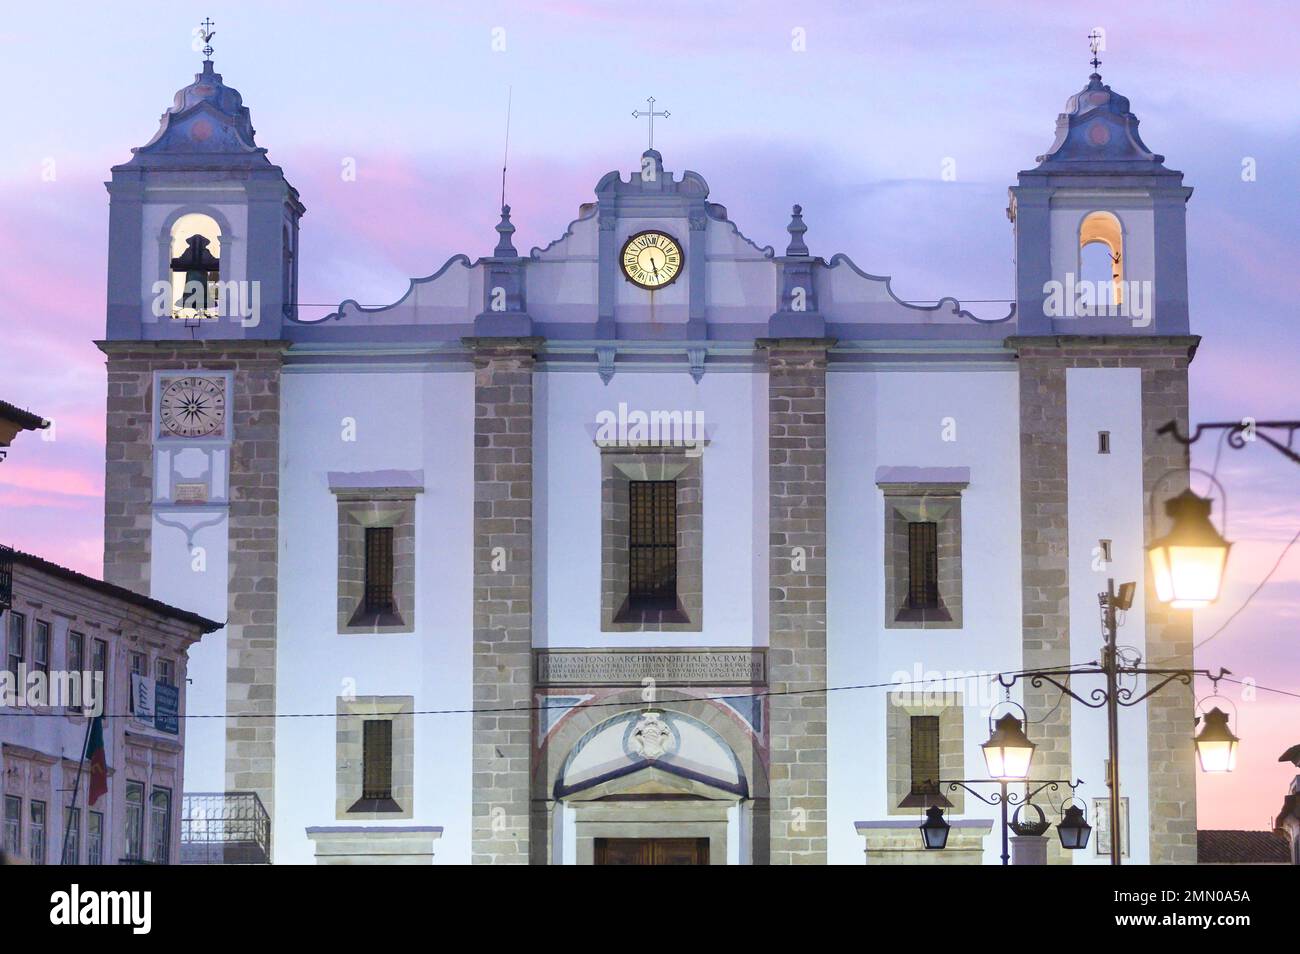 Portugal, région de l'Alentejo, Evora, église Santo Antao sur la place do Giraldo dans le centre historique de l'UNESCO Banque D'Images